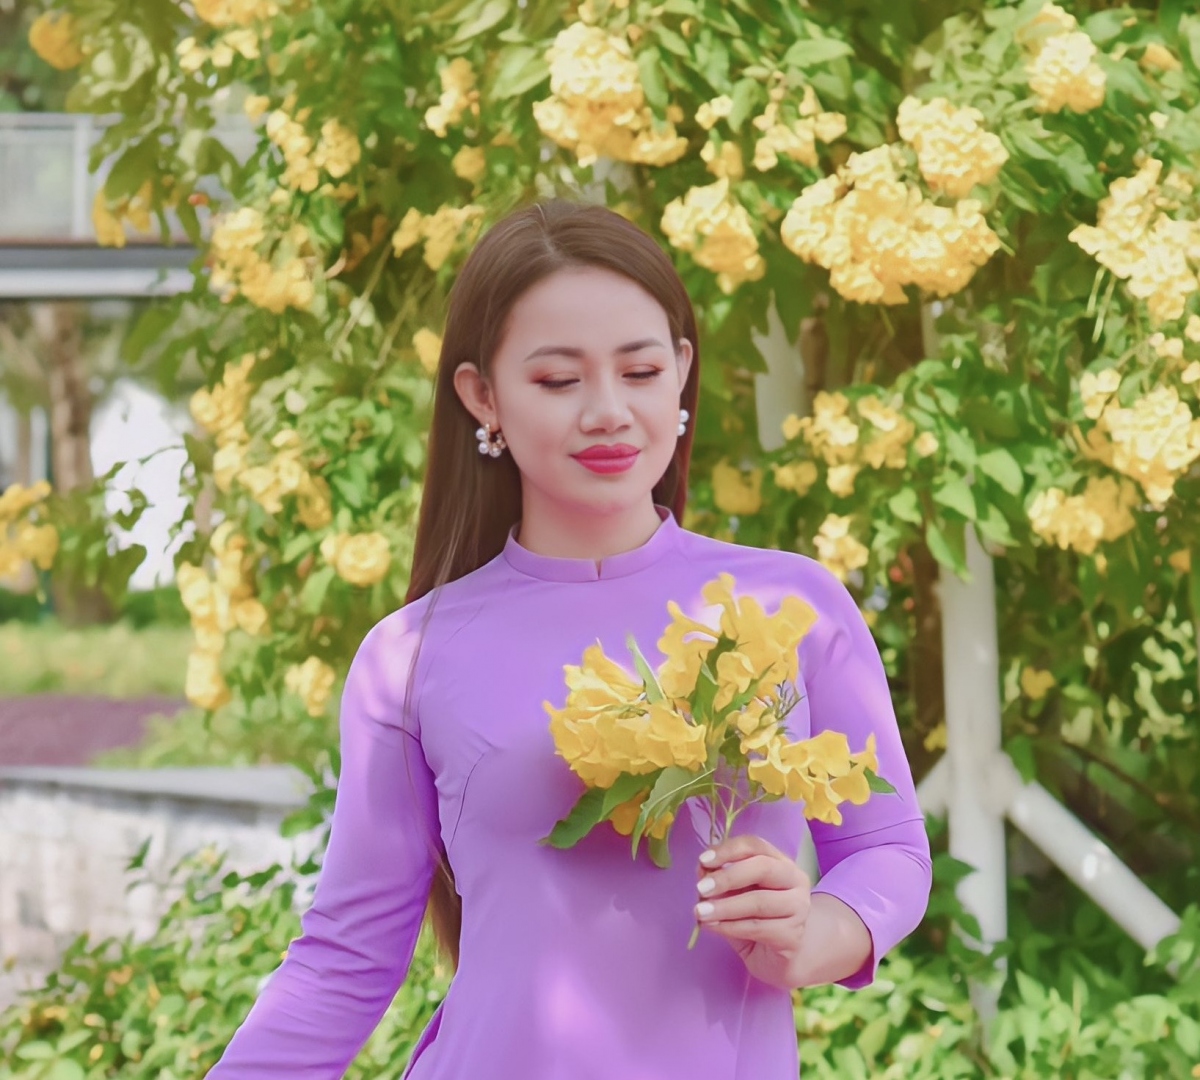 Ca sỹ Lương Ngọc Diệp ra mắt MV về mùa xuân - ảnh 1